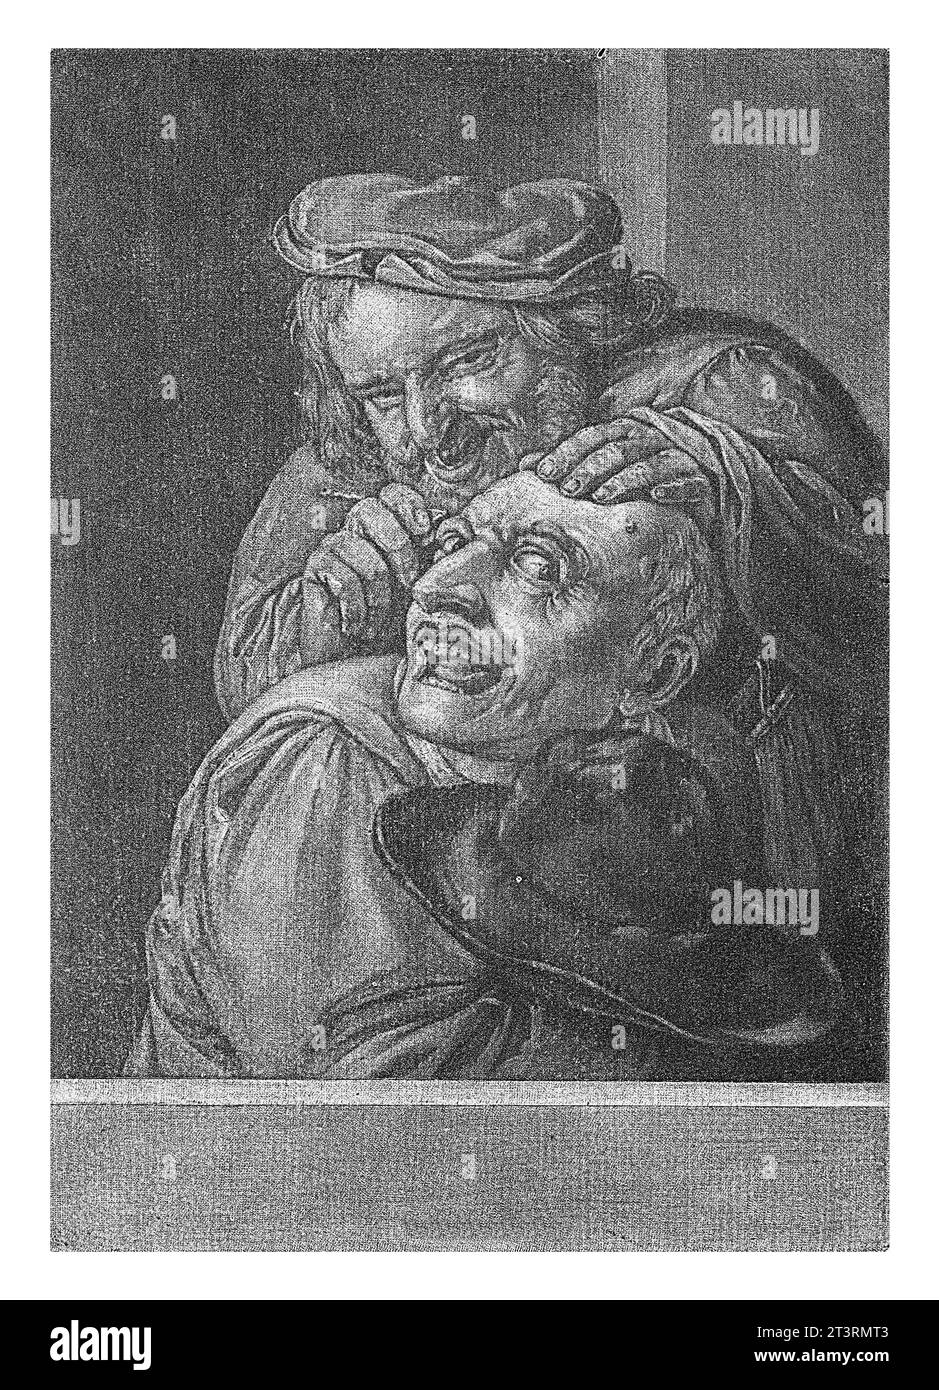 Keisnijder (il sentimento), Abraham Bloteling, dopo Petrus Staverenus, 1652 - 1690 il senso del sentimento. Un uomo taglia un masso dalla testa di un altro uomo Foto Stock